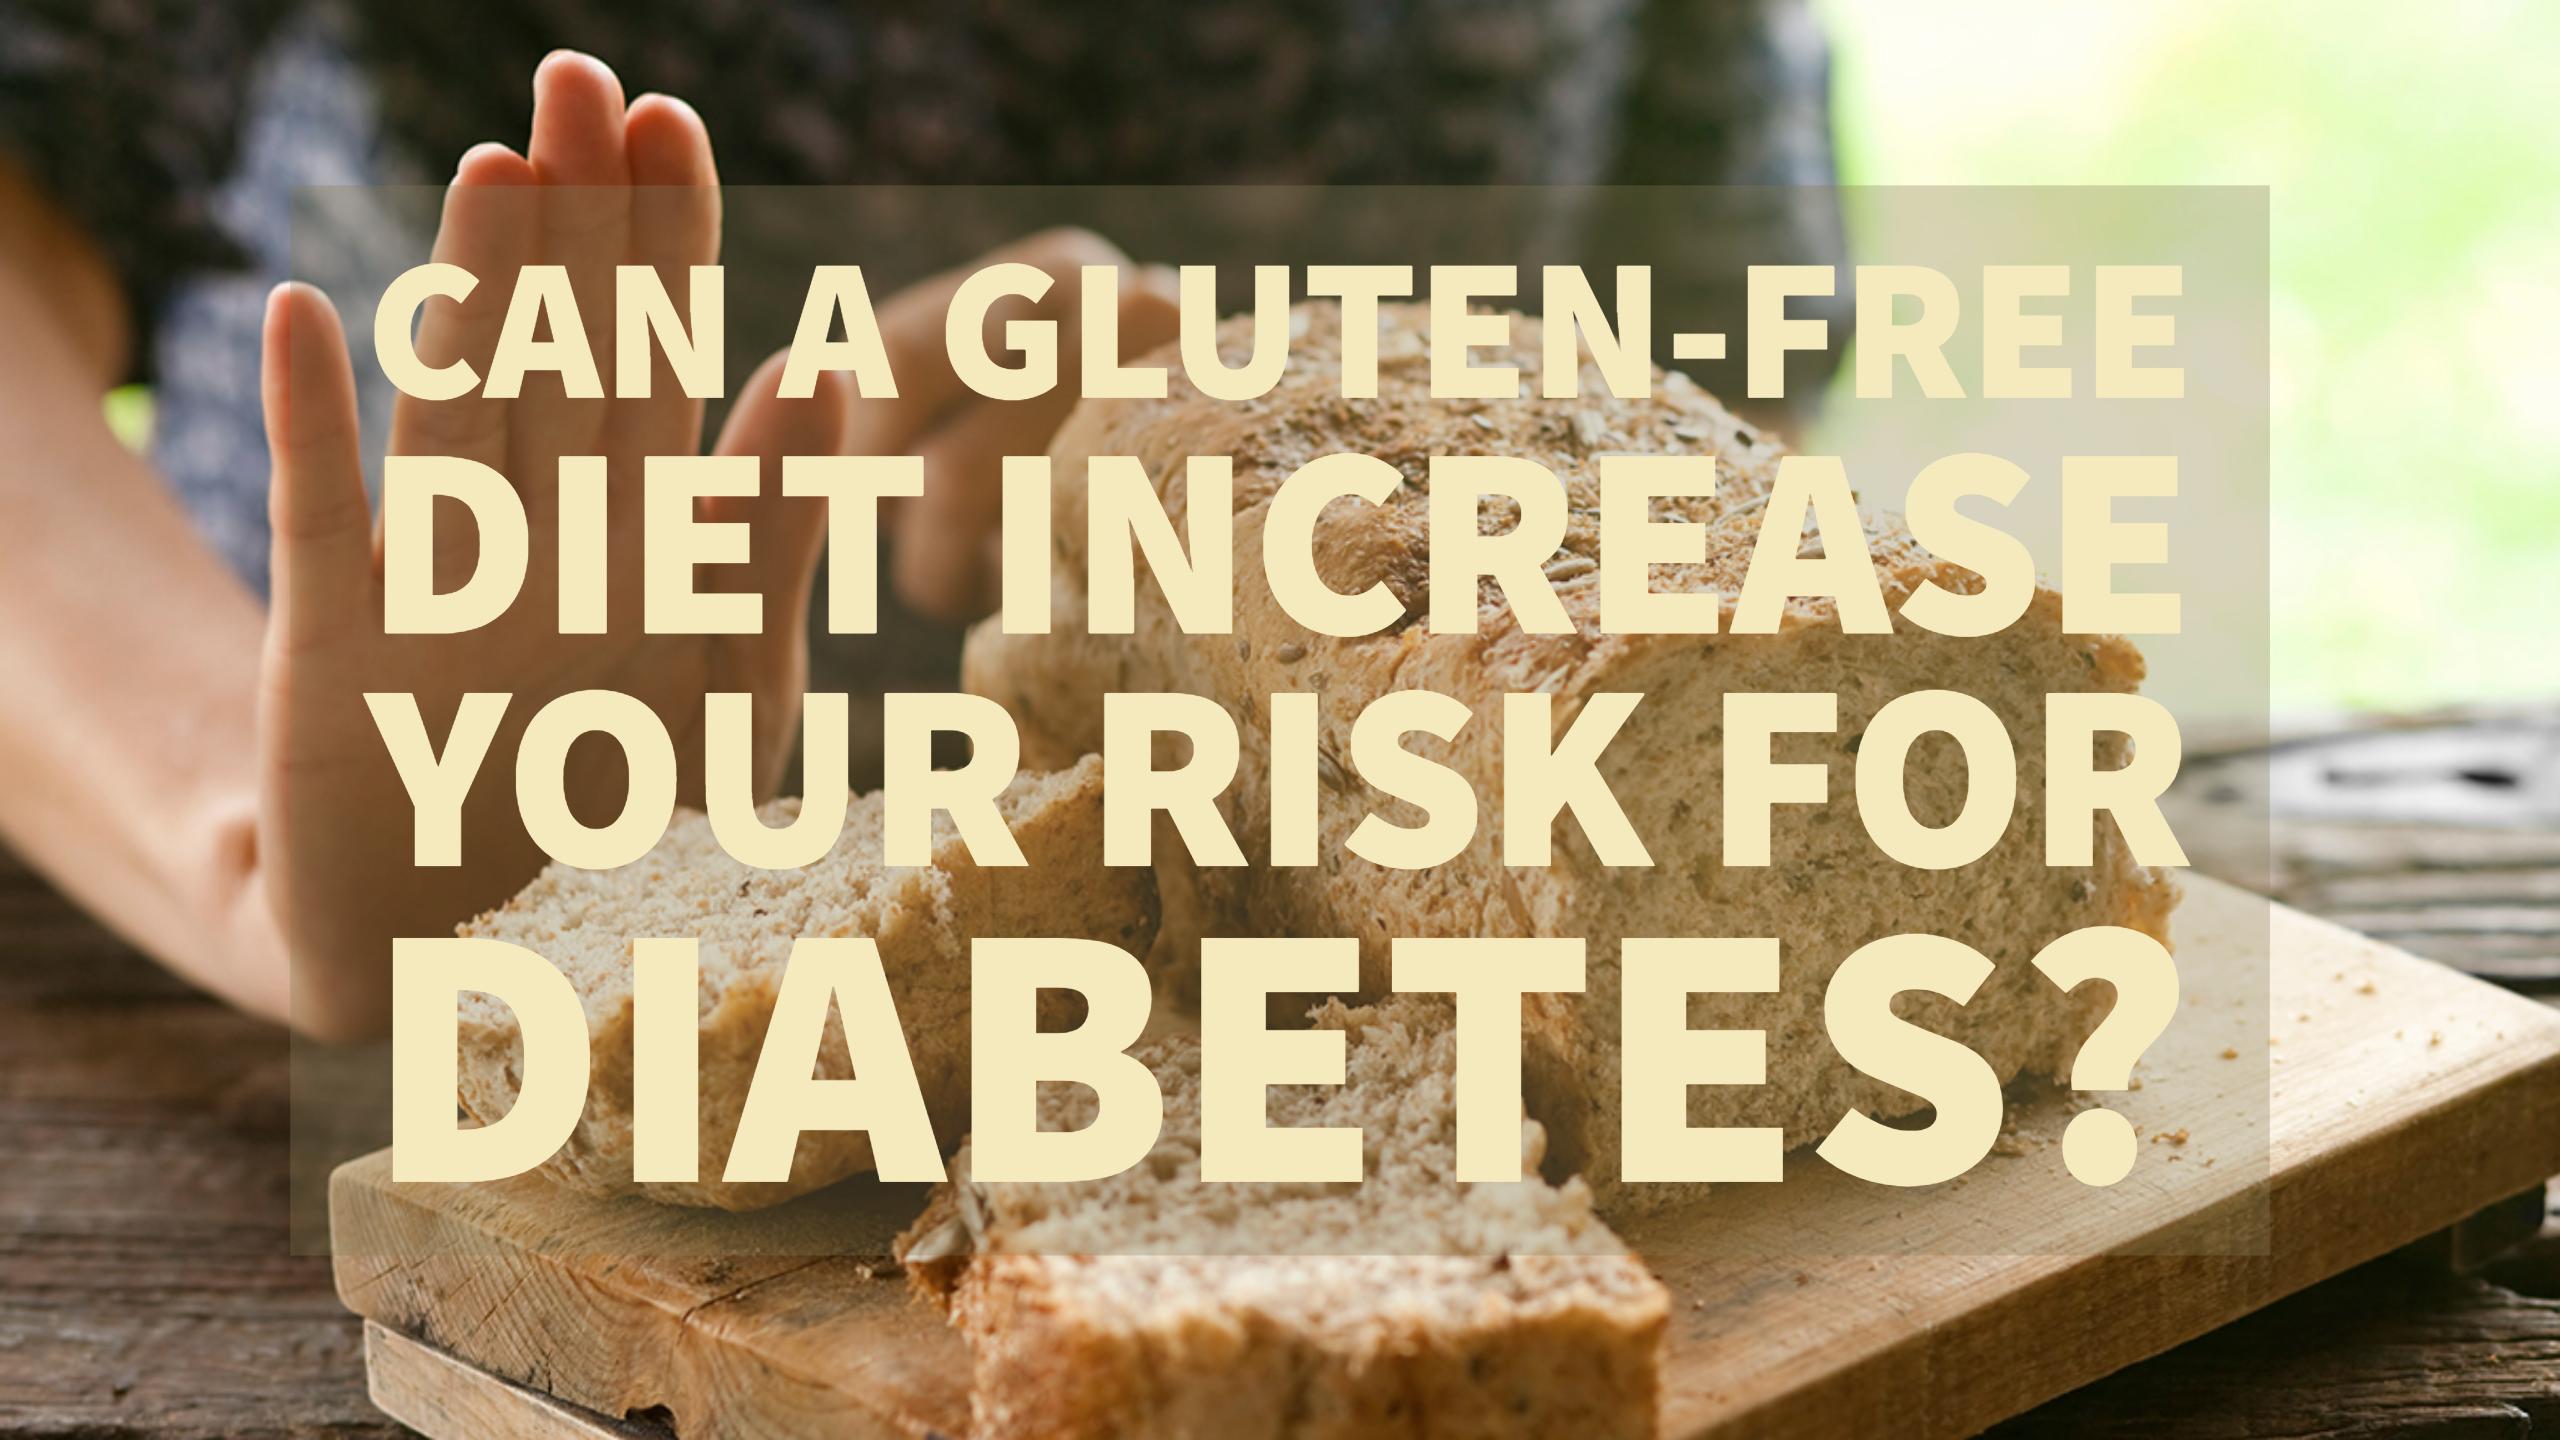 Gluten-free diet and diabetes